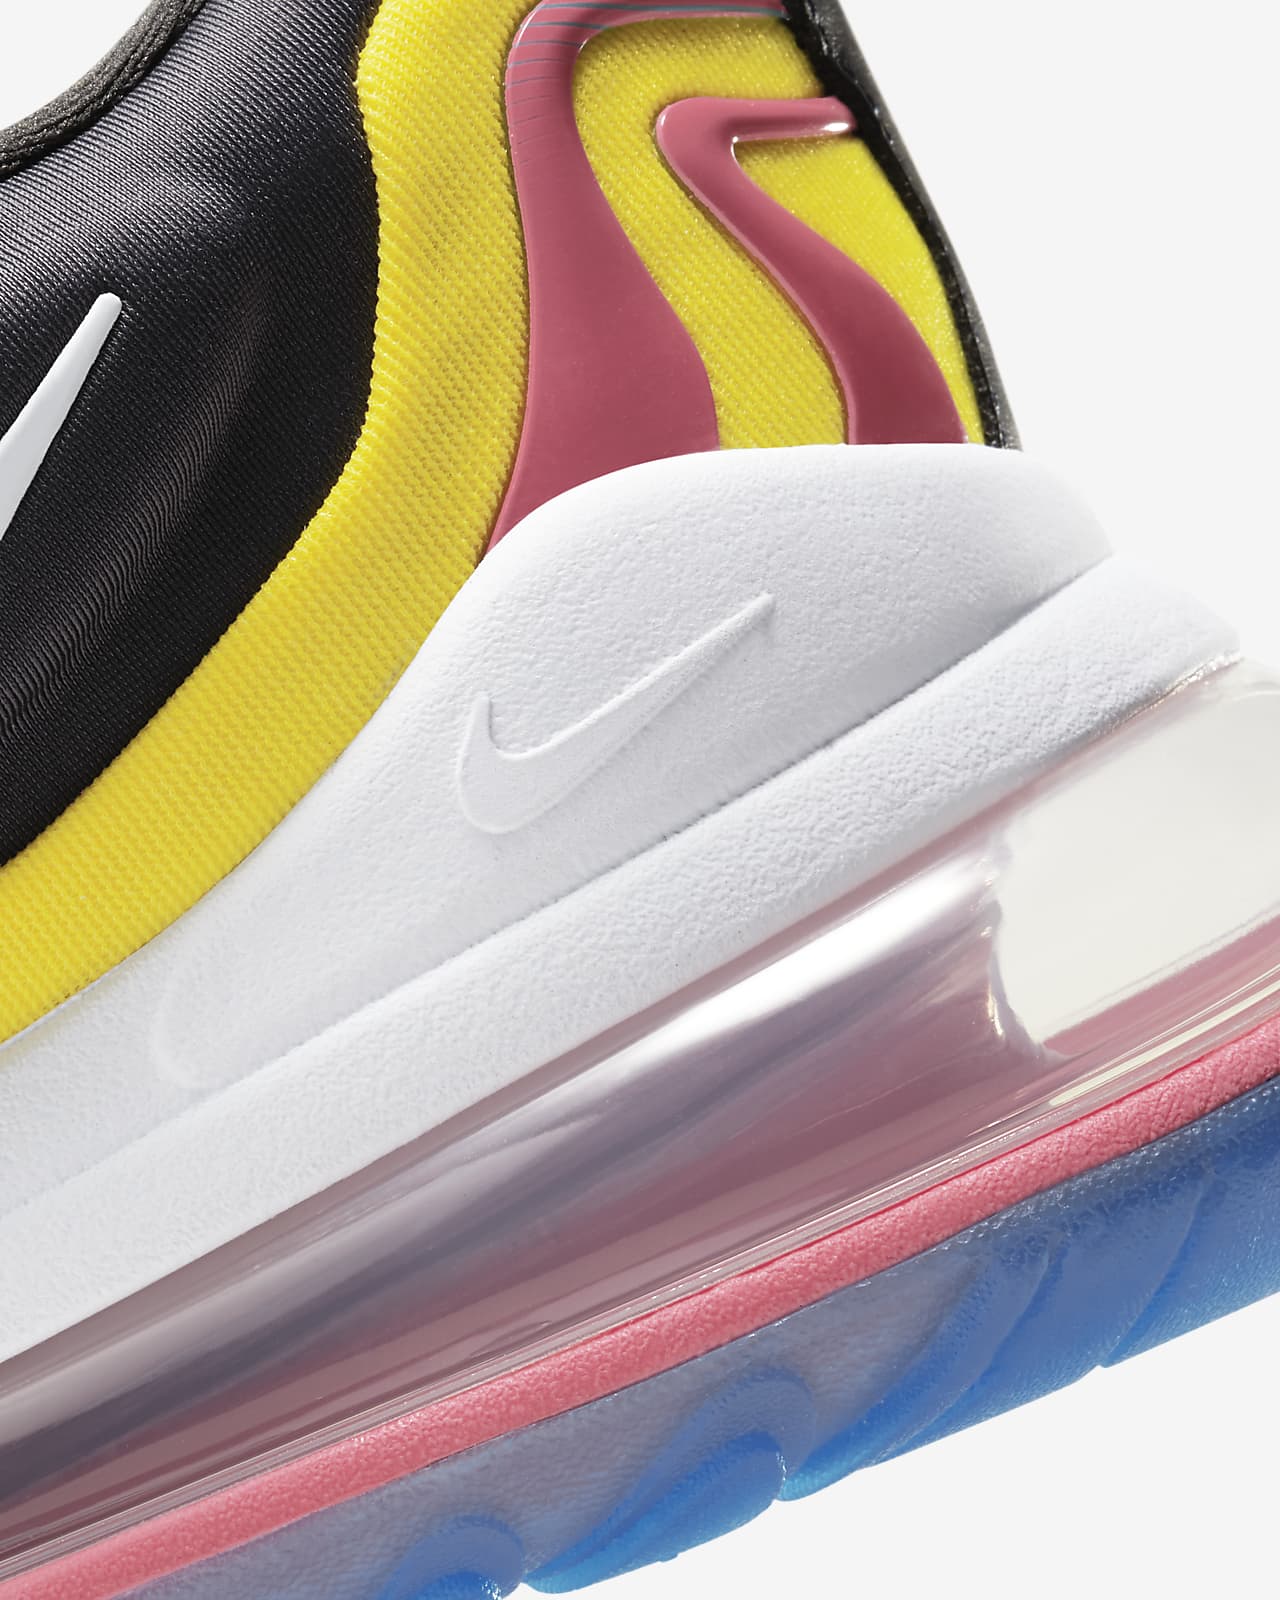 Nike Air Max 270 React ENG Men's Shoe 